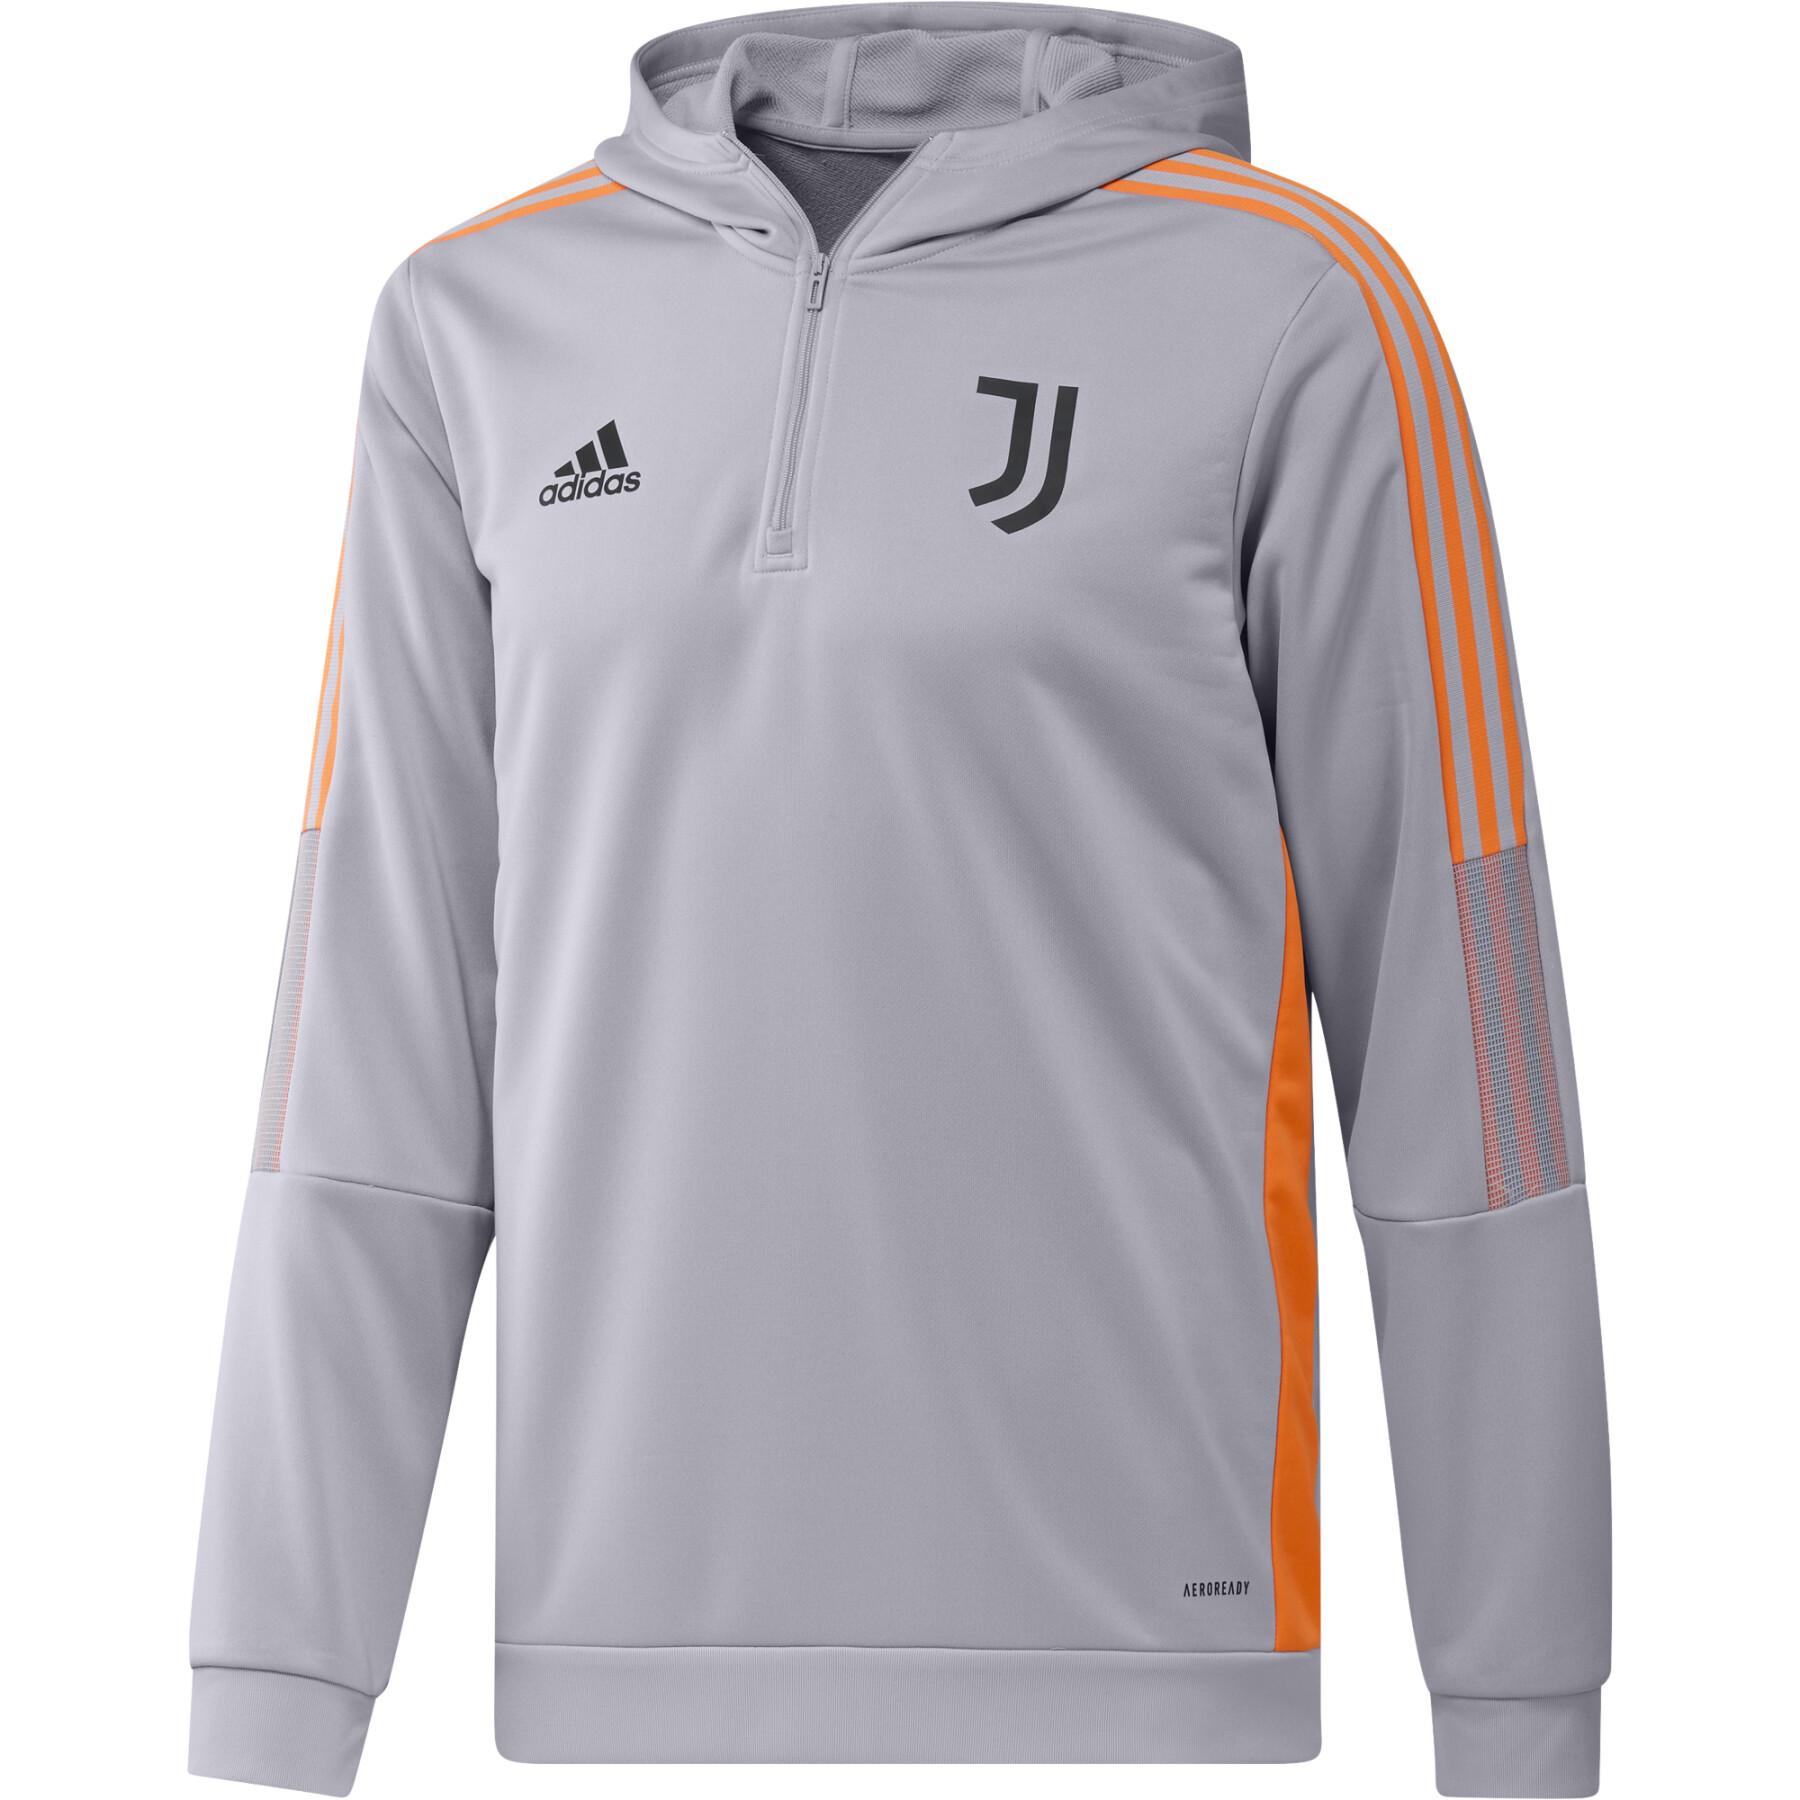 Sweat jacket Juventus Turin Tiro 21